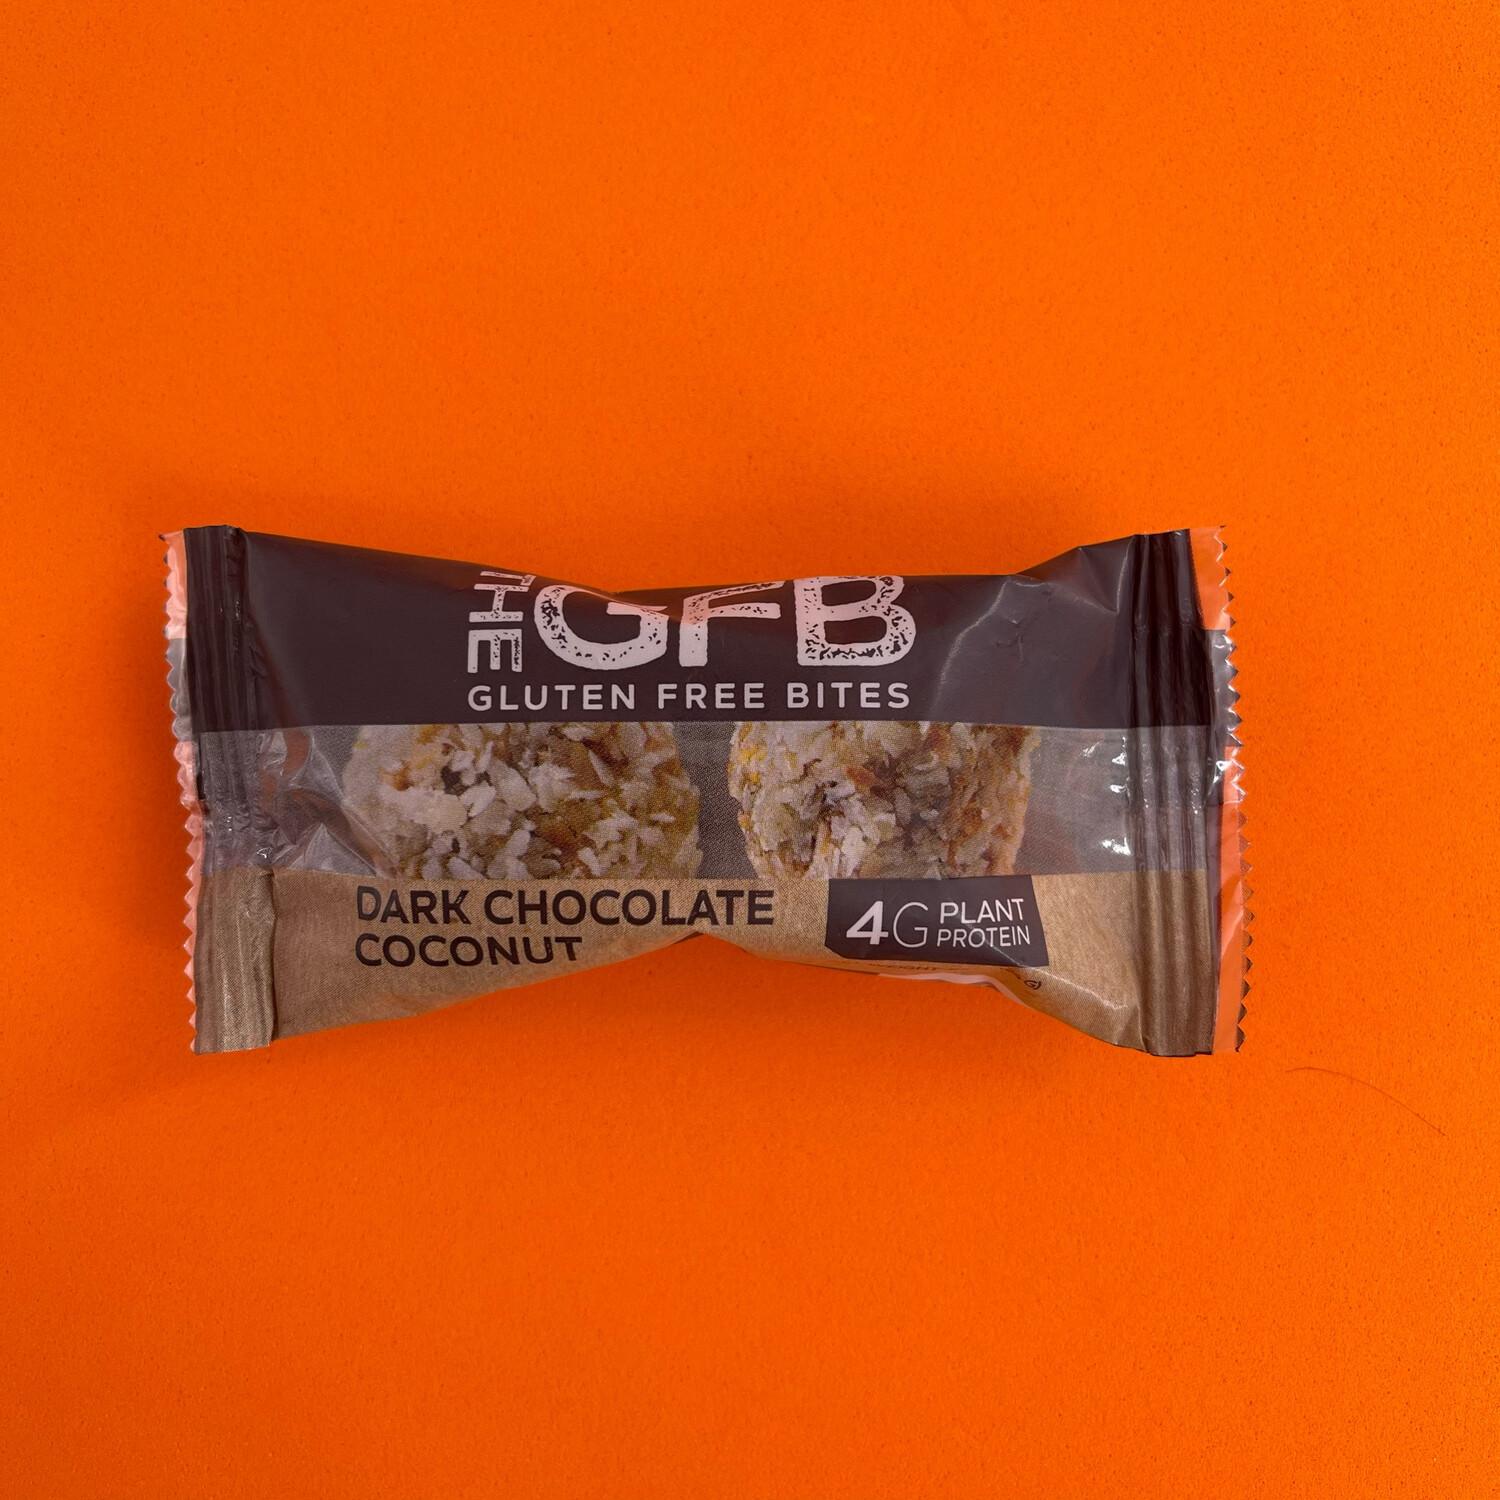 The Gluten Free Bites Dark Chocolate Coconut 4g Protein